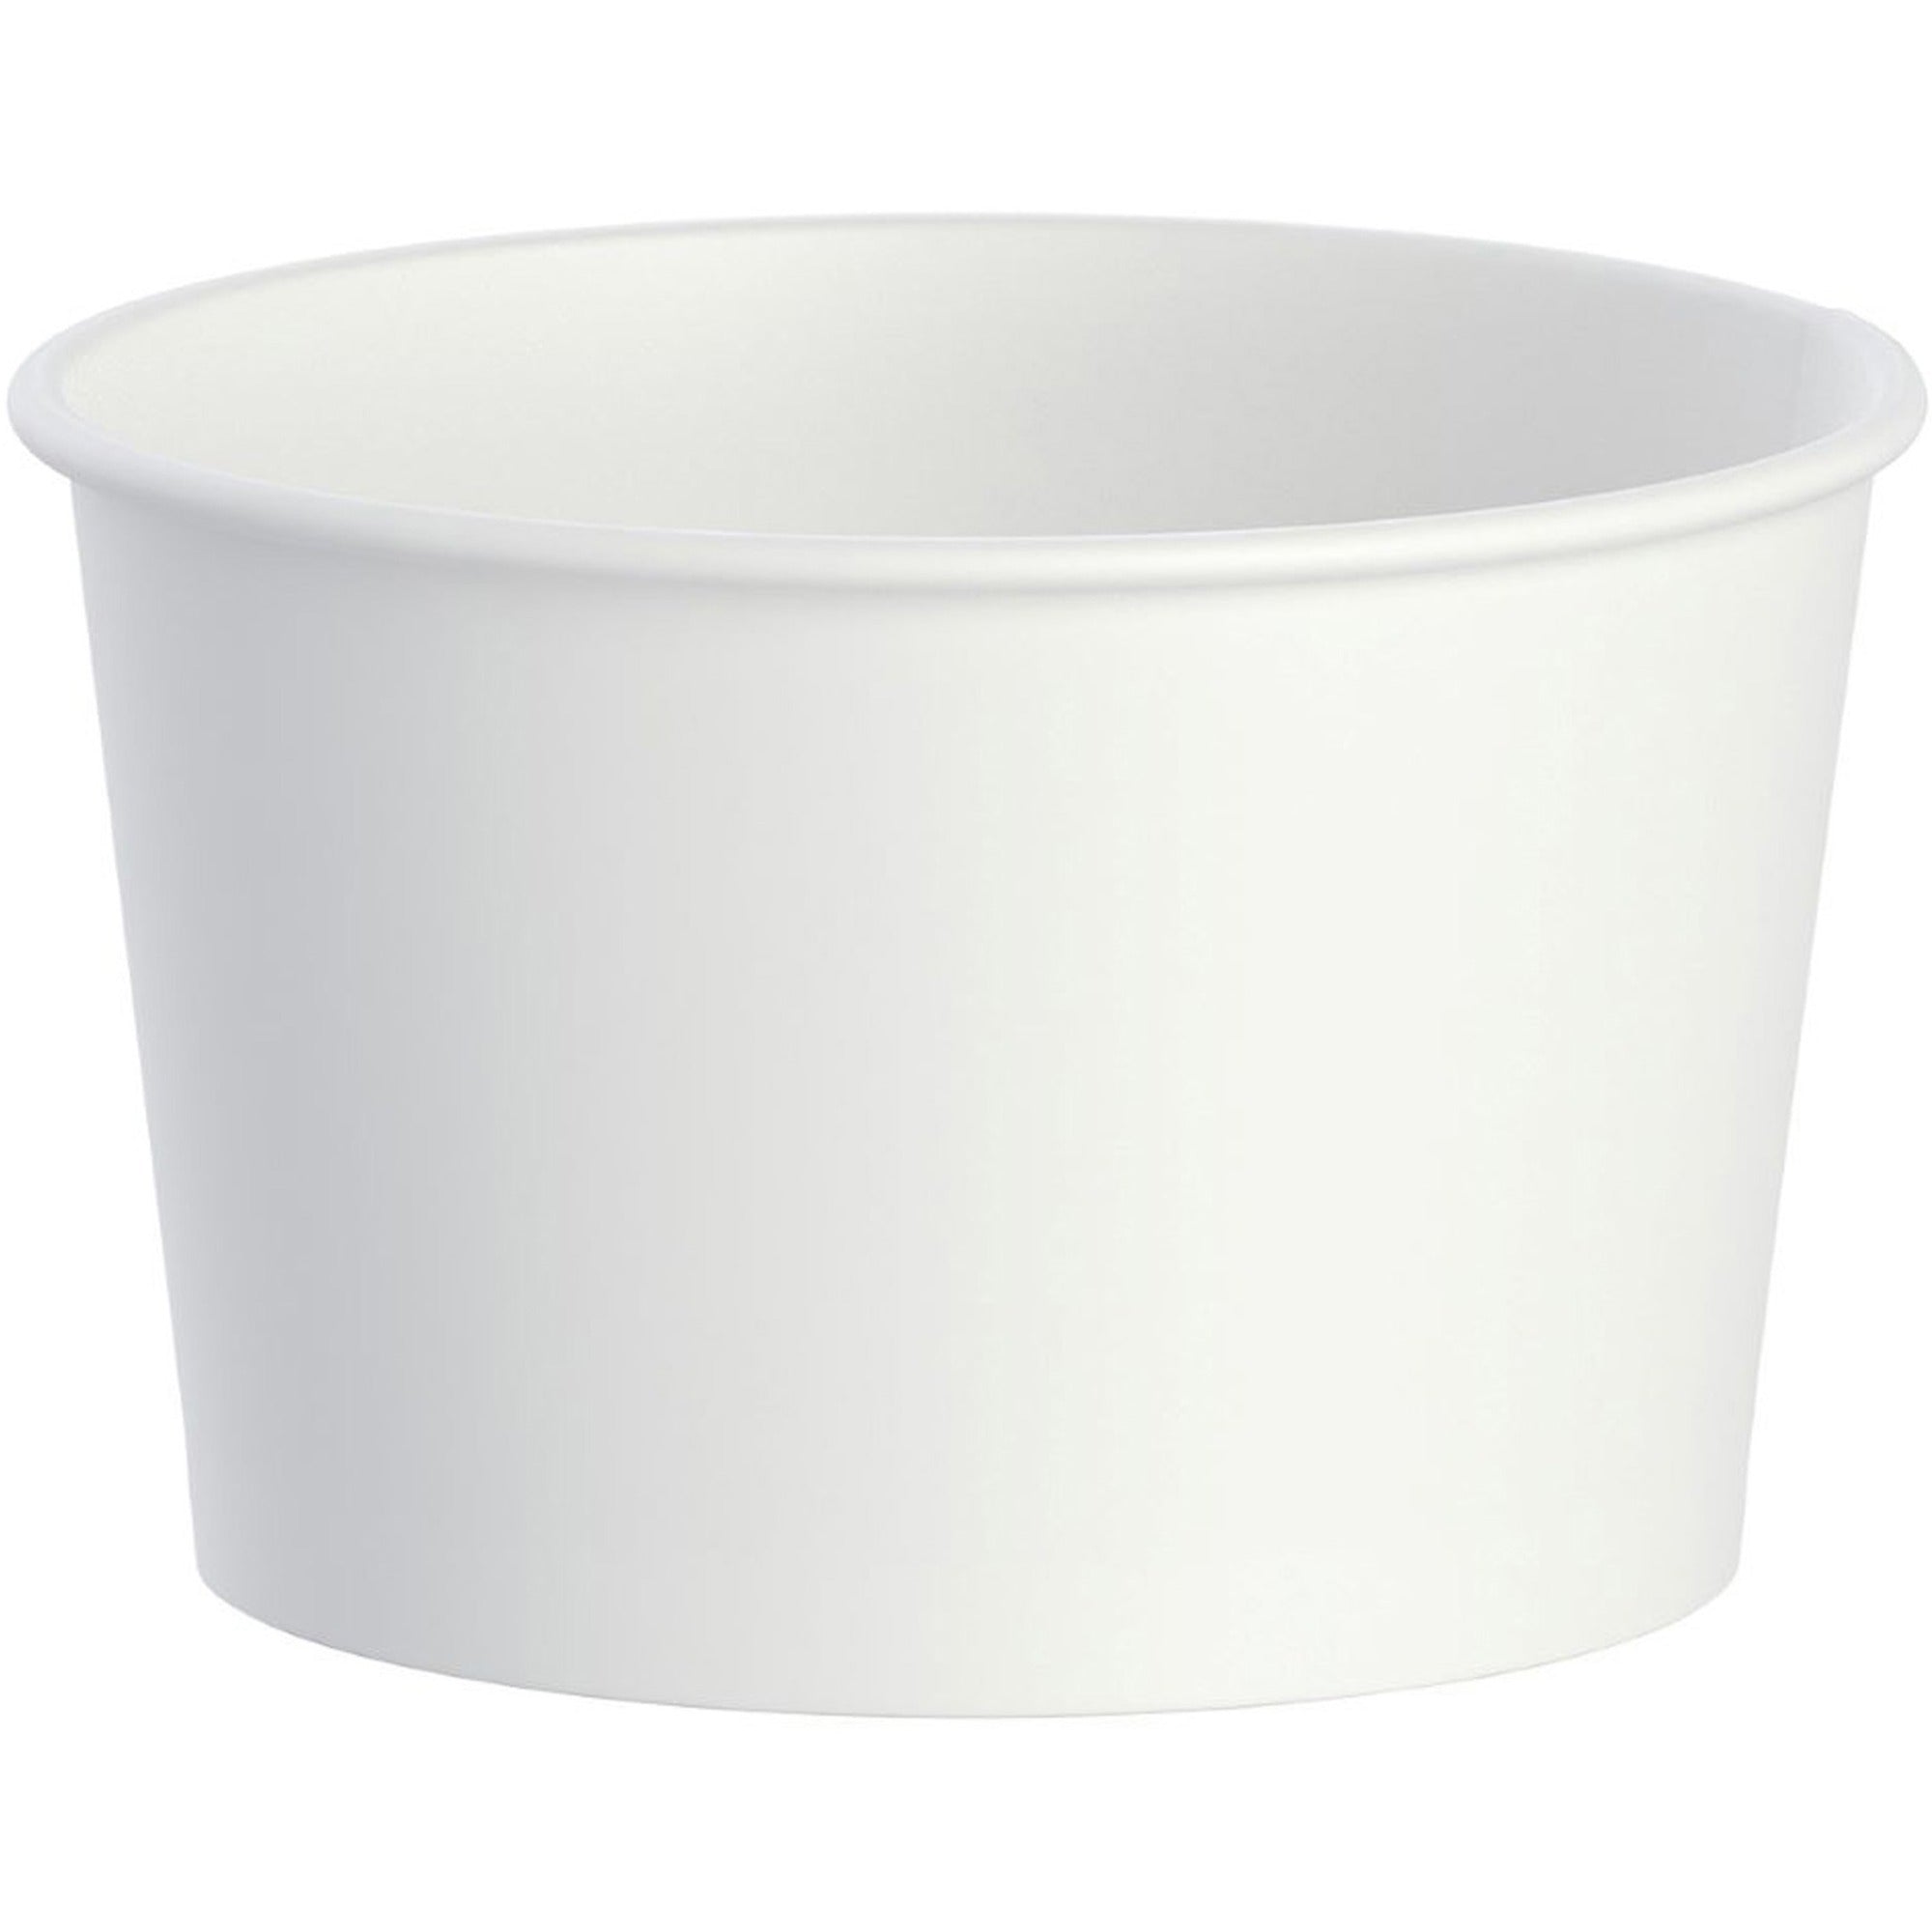 solo-disposable-food-container-disposable-white-polyethylene-body-20-carton_sccvs608 - 1